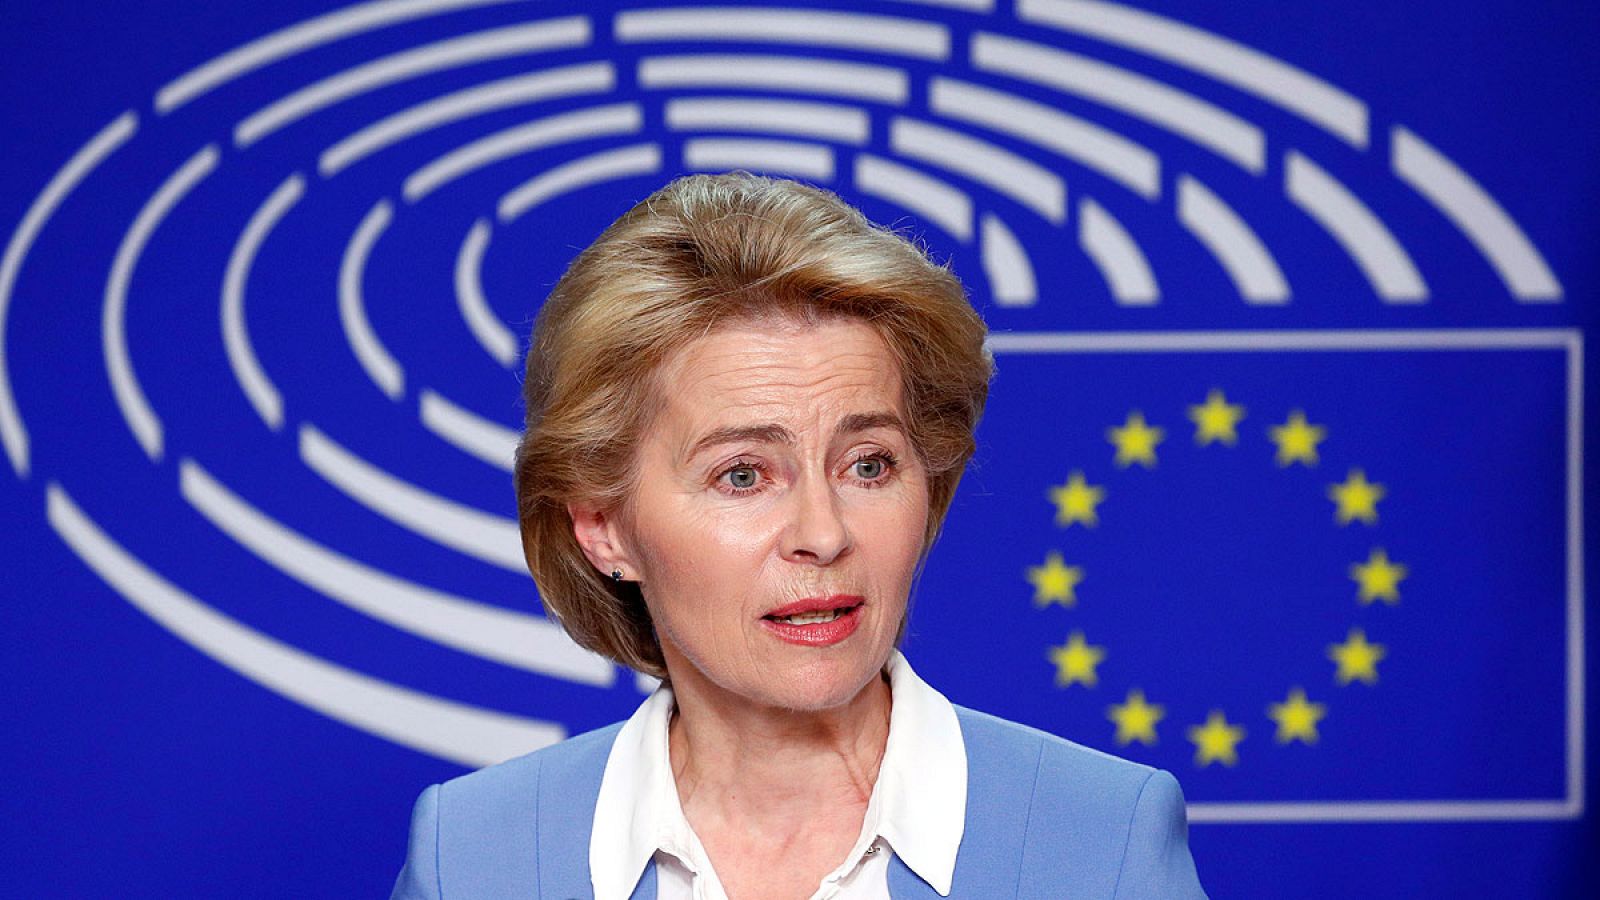 La ministra alemana de Defensa, Ursula von der Leyen, candidata a presidir la CE.